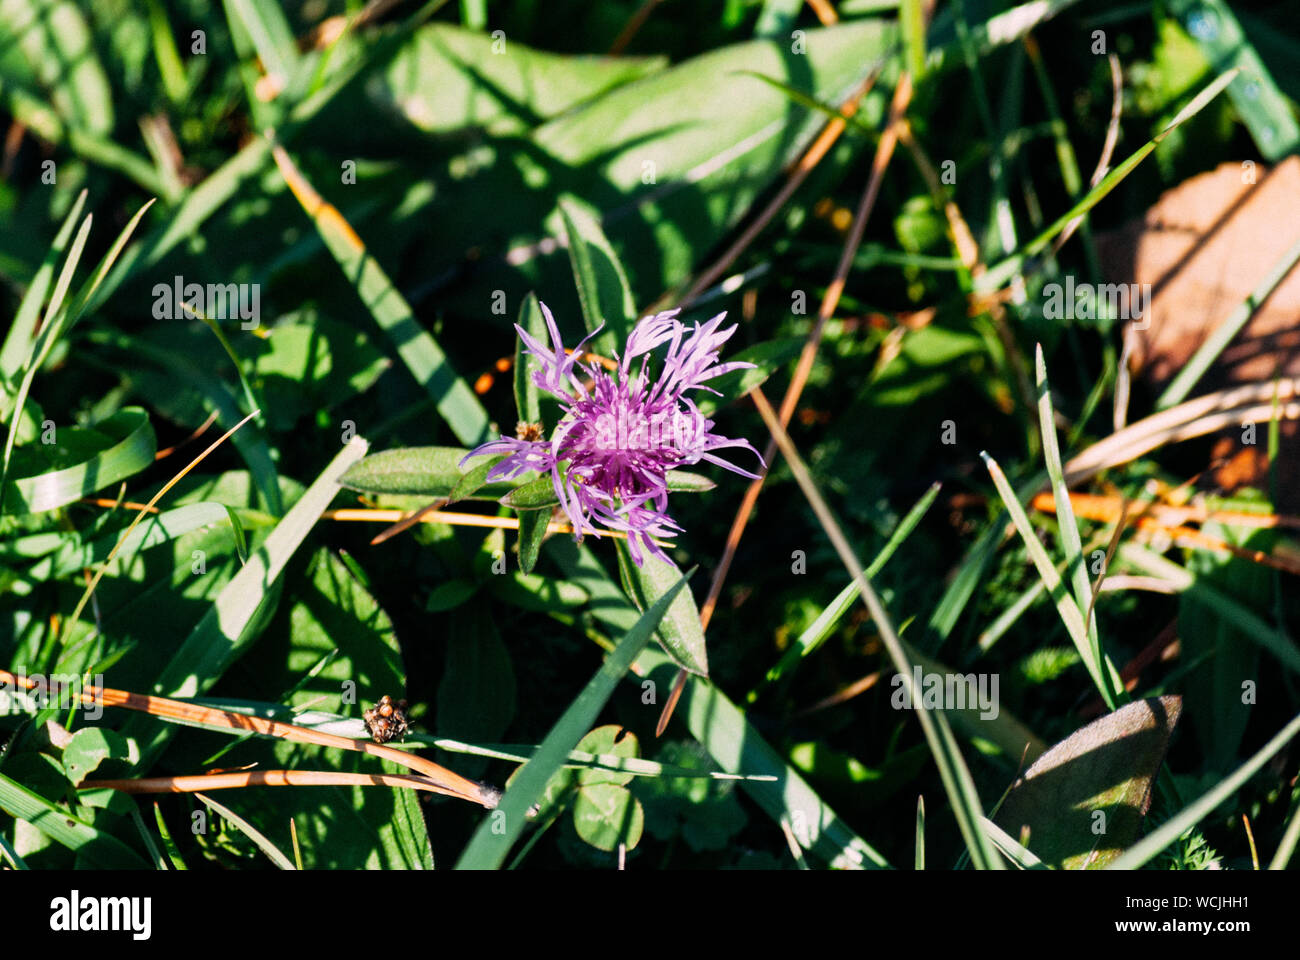 Cierre de planta con flores púrpura Foto de stock